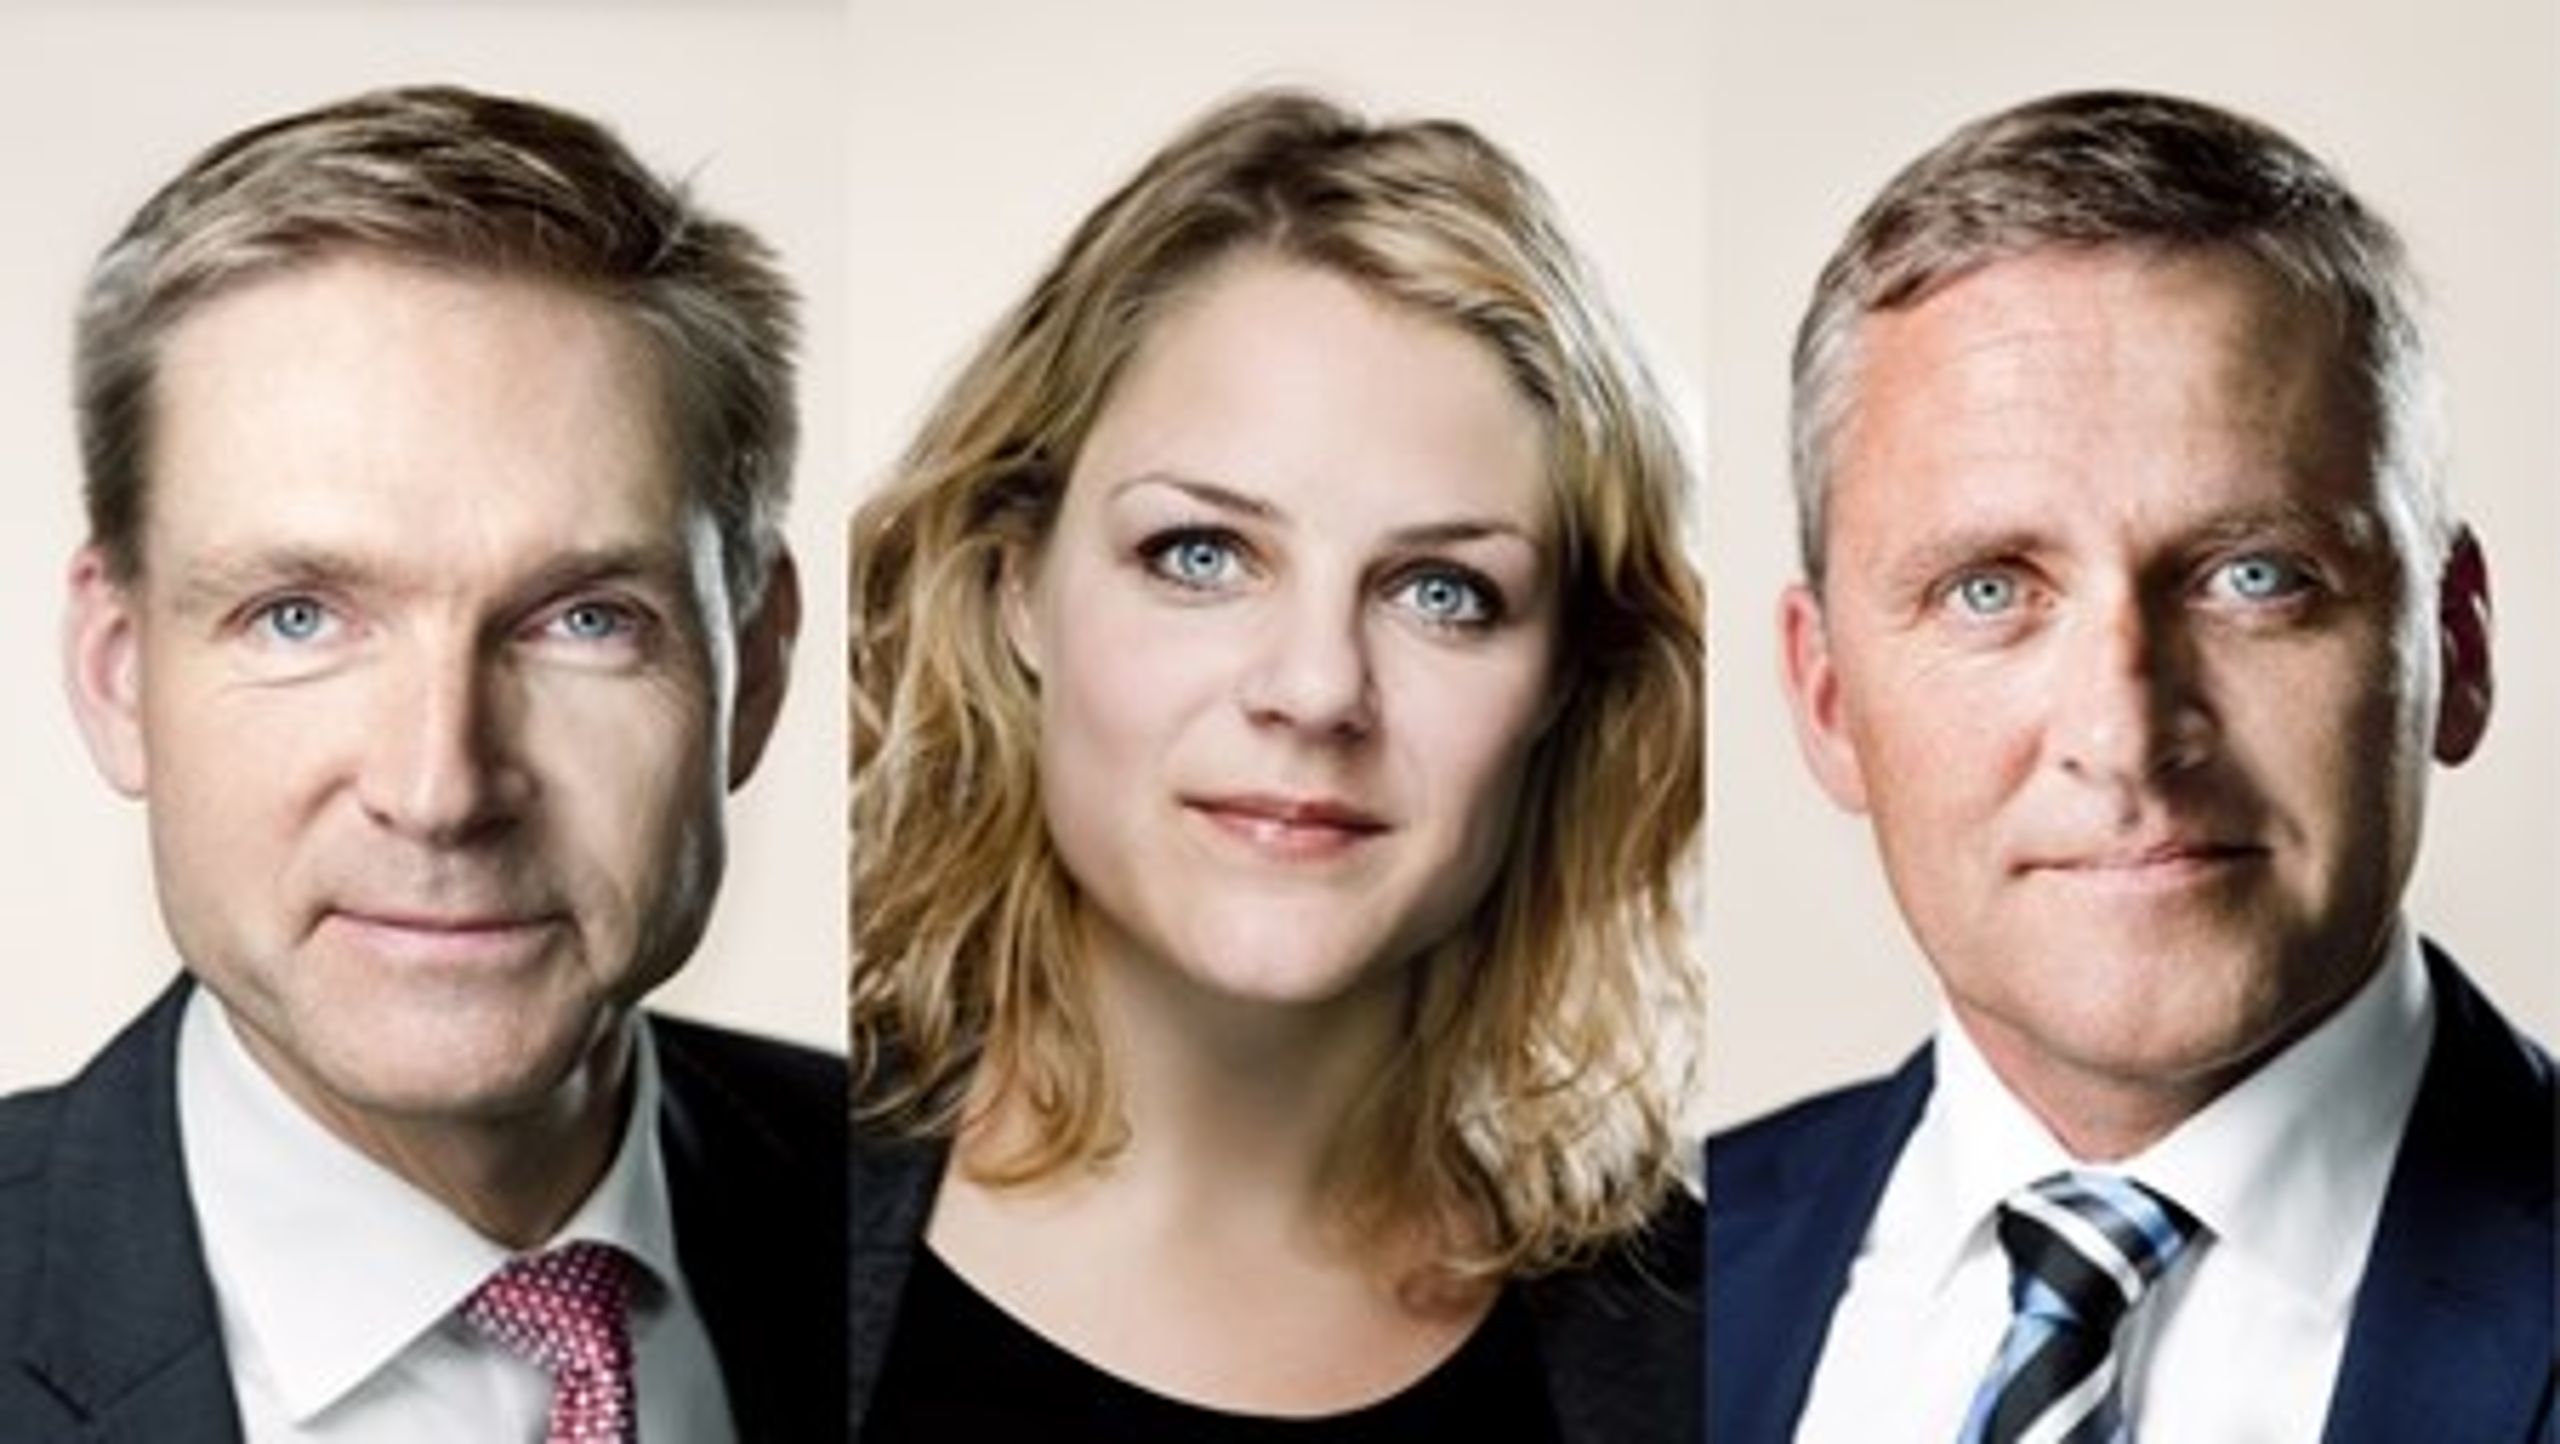 Kristian Thulesen Dahl, Johanne Schmidt-Nielsen og Anders Samuelsen er begyndt at&nbsp;finde fælles fodslag på en række områder, der udfordrer de eksisterende politiske systemer.